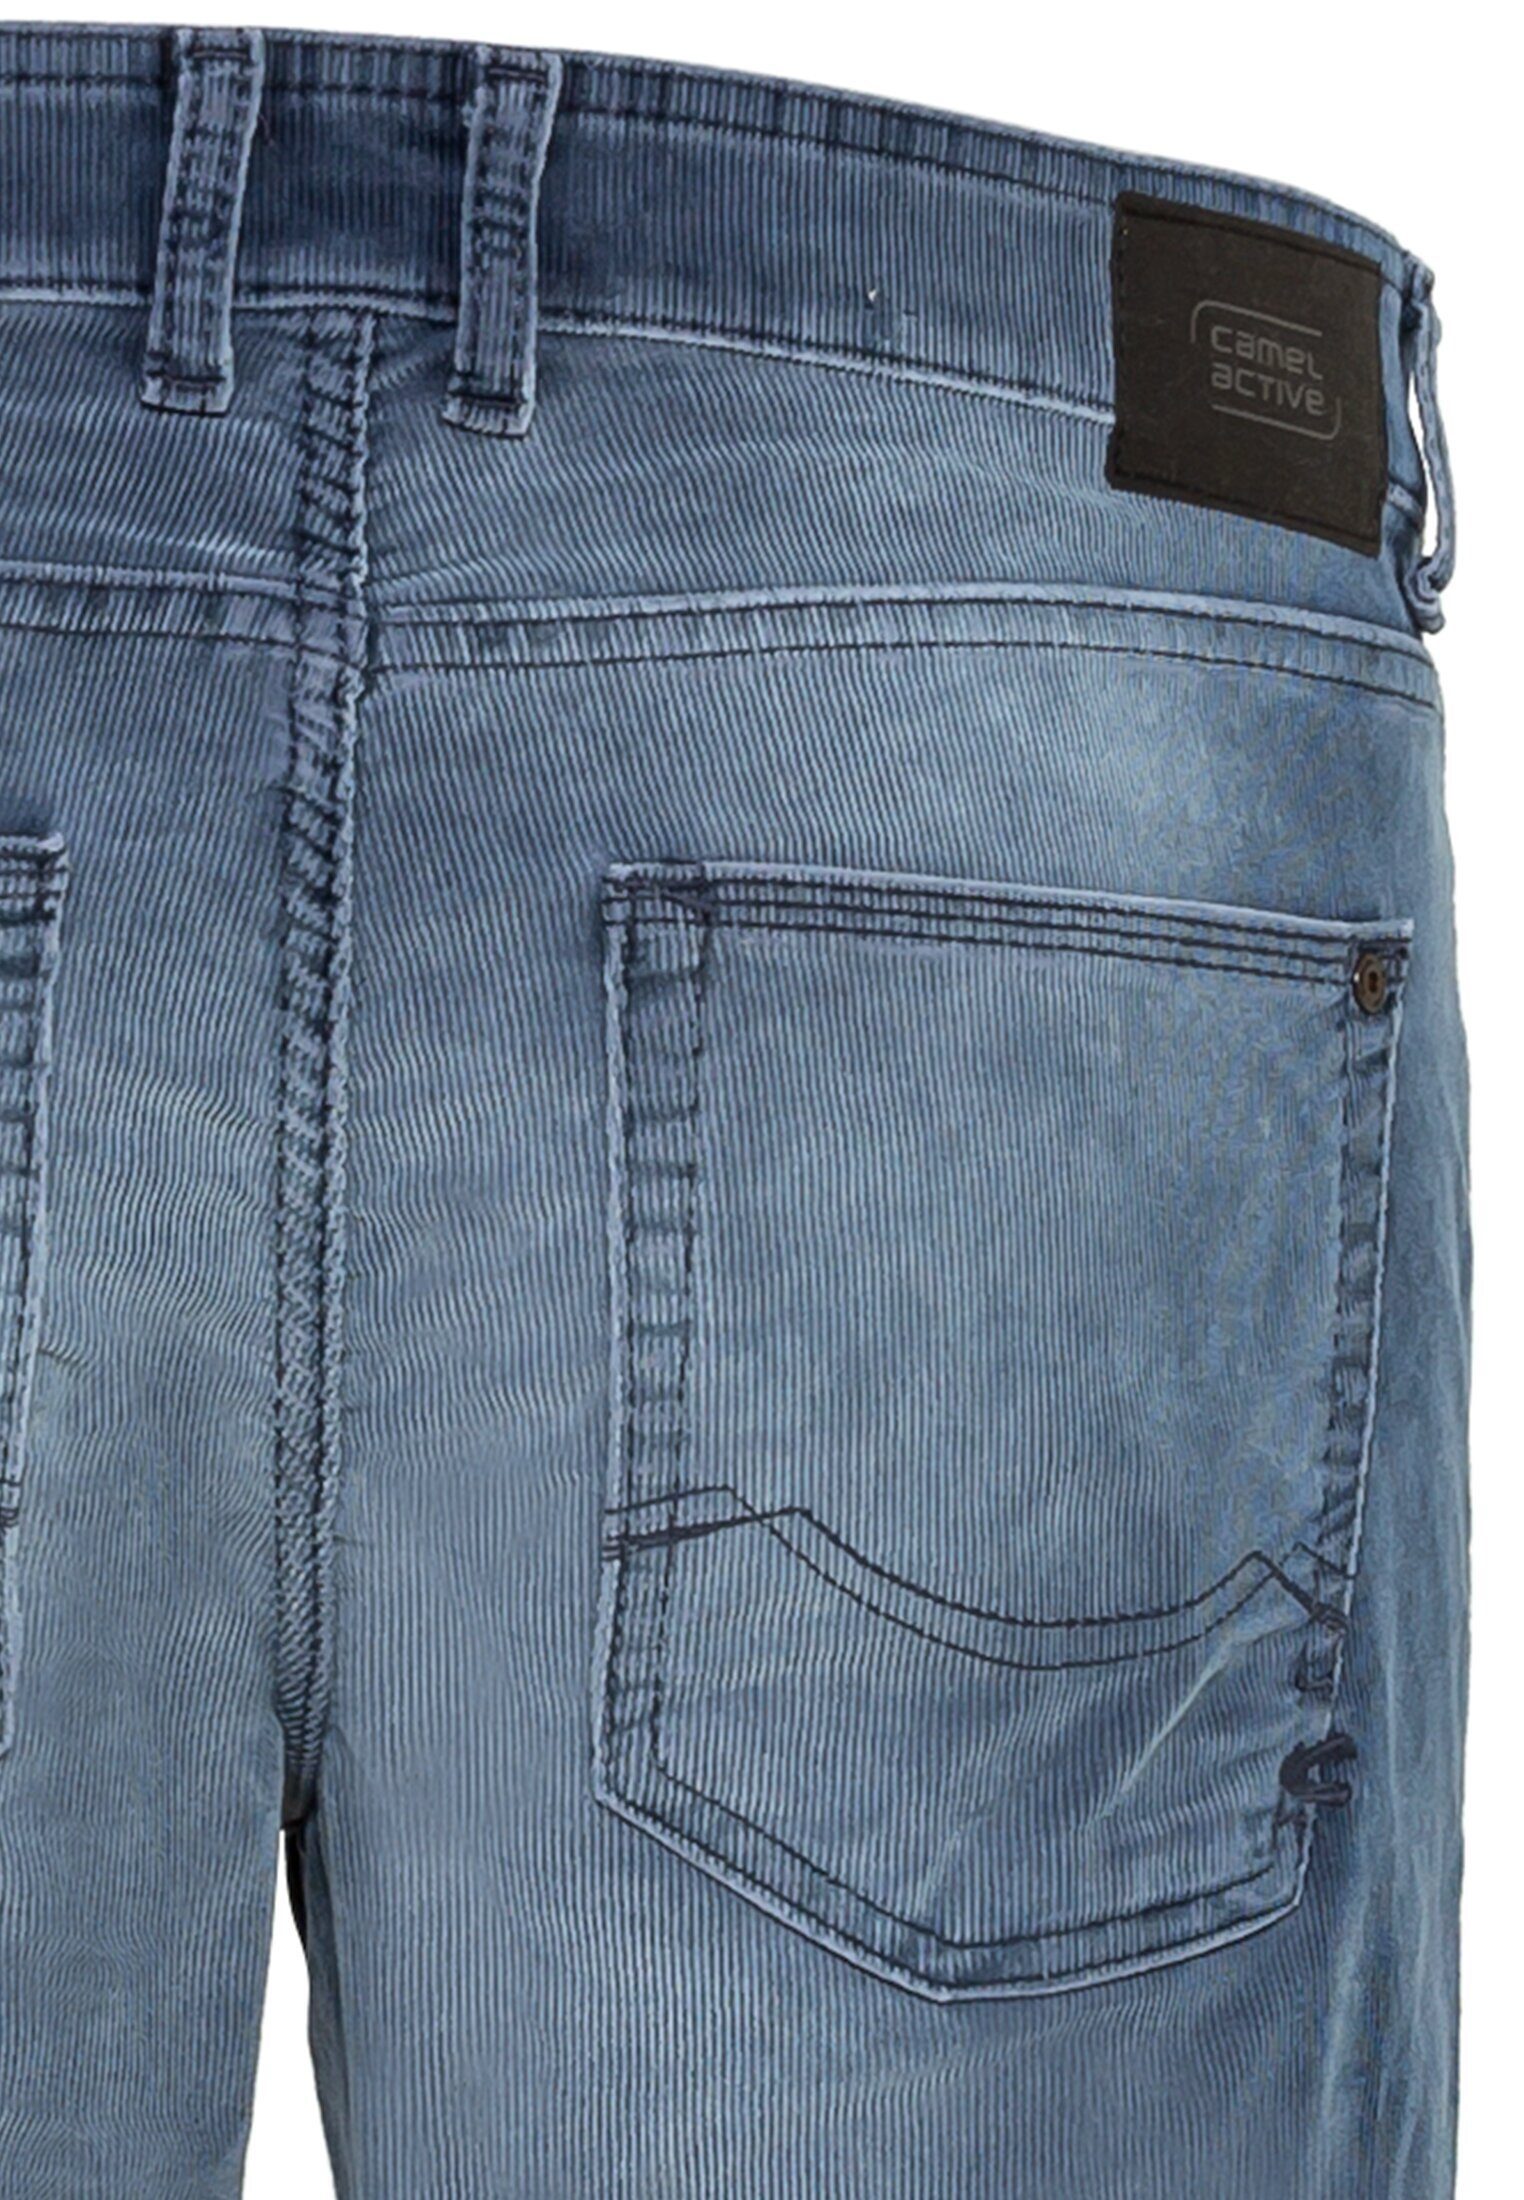 camel active 5-Pocket-Jeans Blau Slim Fit Cordhose